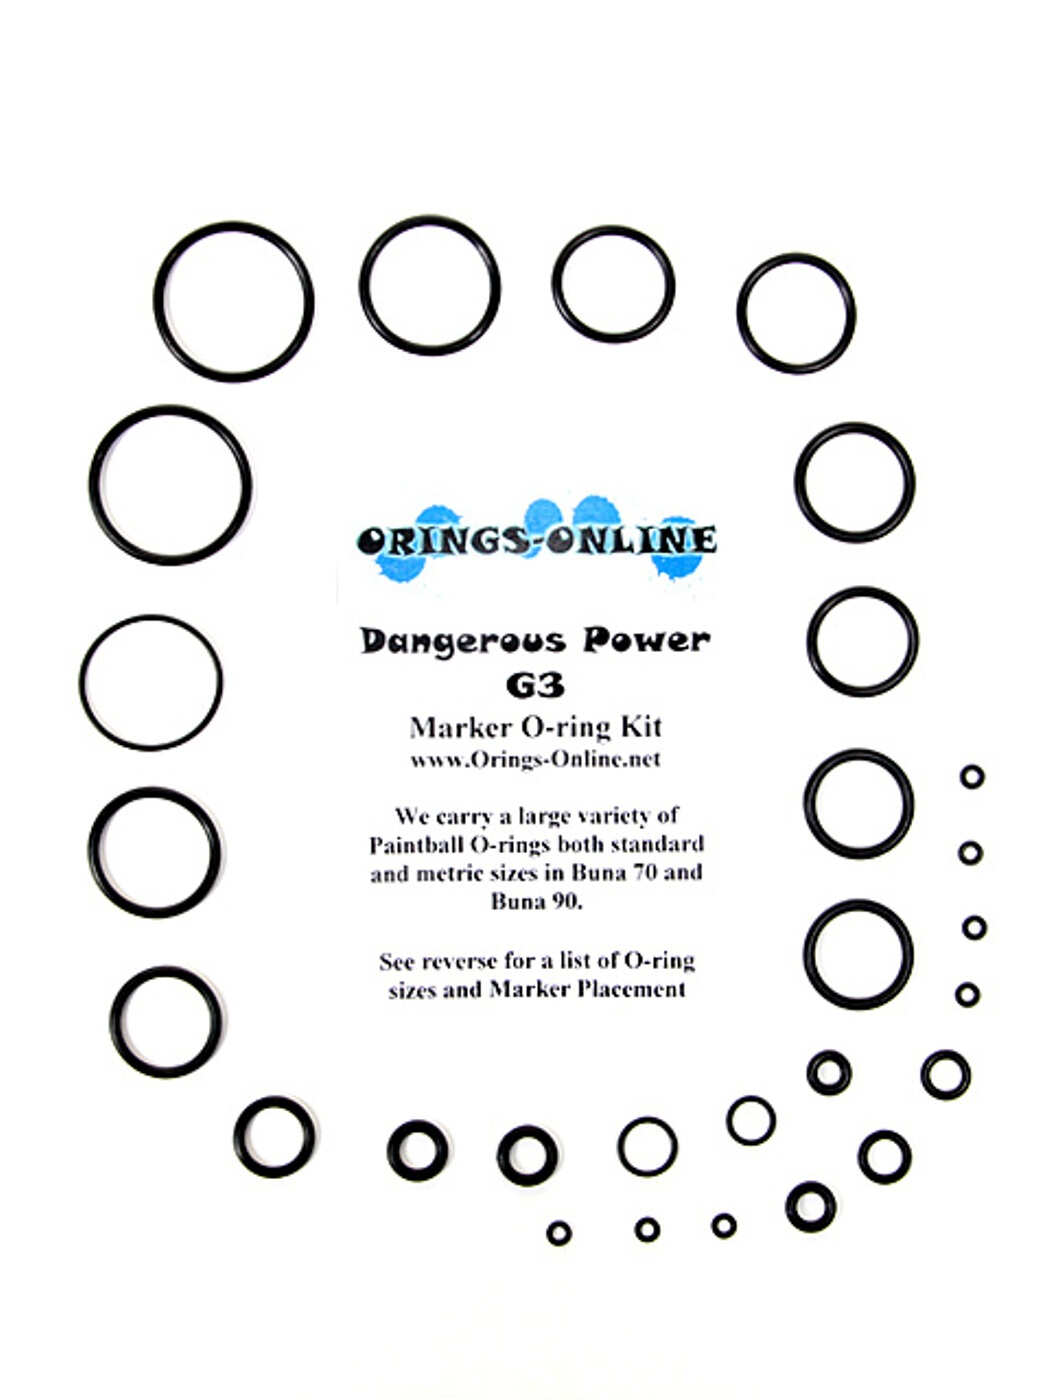 Dangerous Power - G3 Marker O-ring Kit